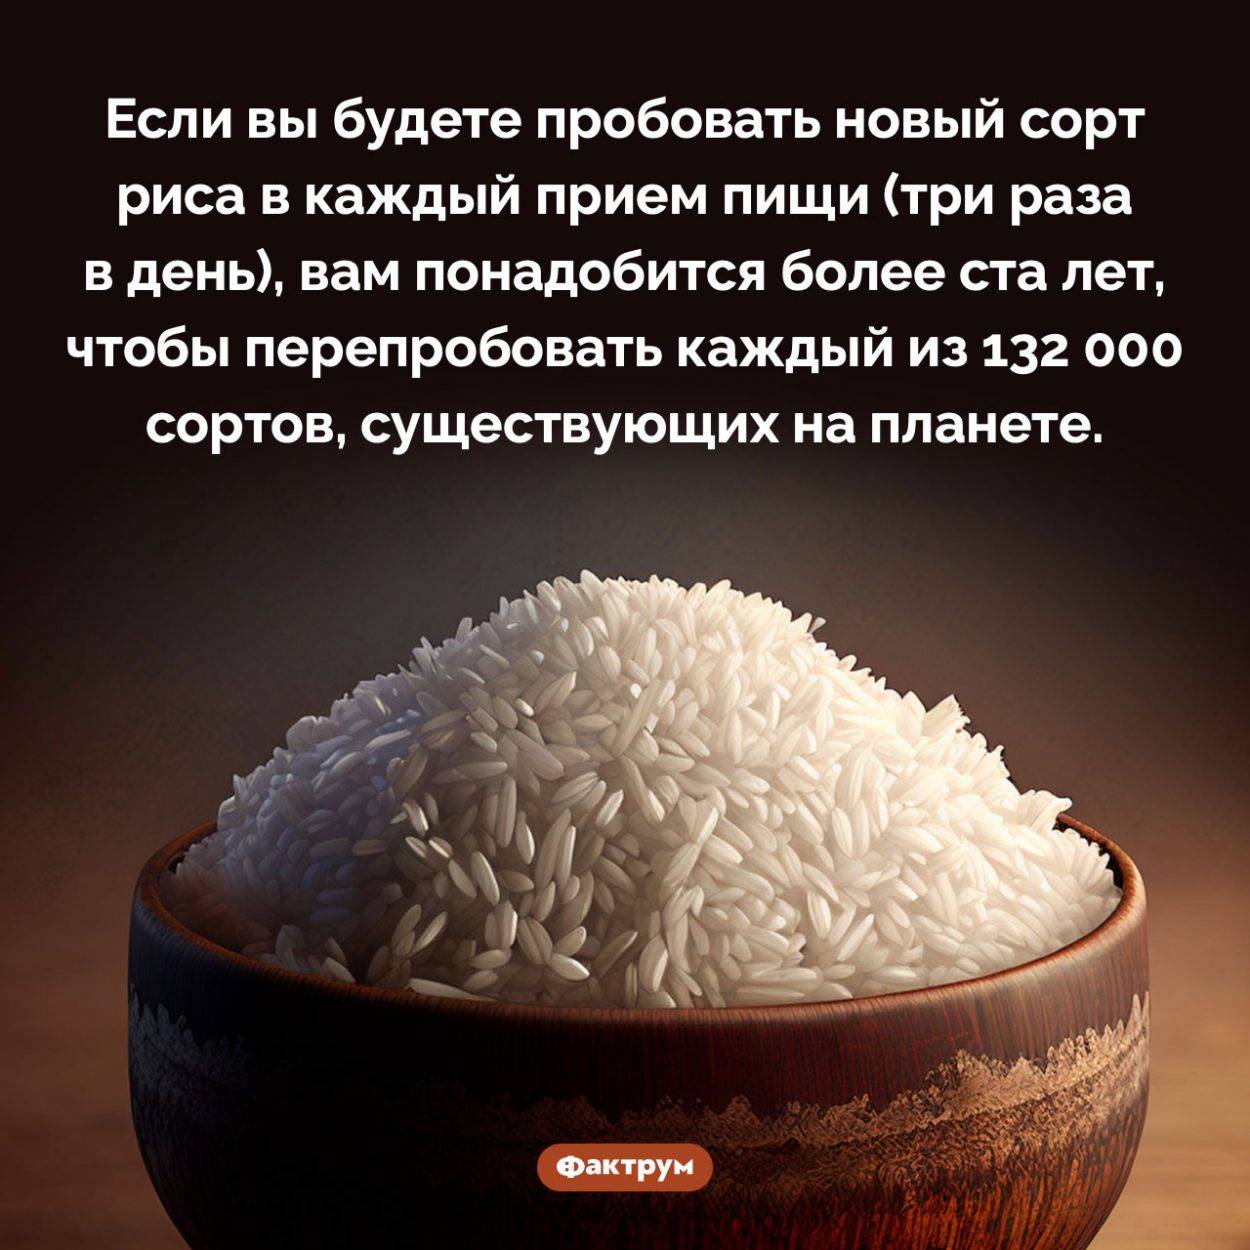 Сколько существует сортов риса. Если вы будете пробовать новый сорт риса в каждый прием пищи (три раза в день), вам понадобится более ста лет, чтобы перепробовать каждый из 132 000 сортов, существующих на планете.